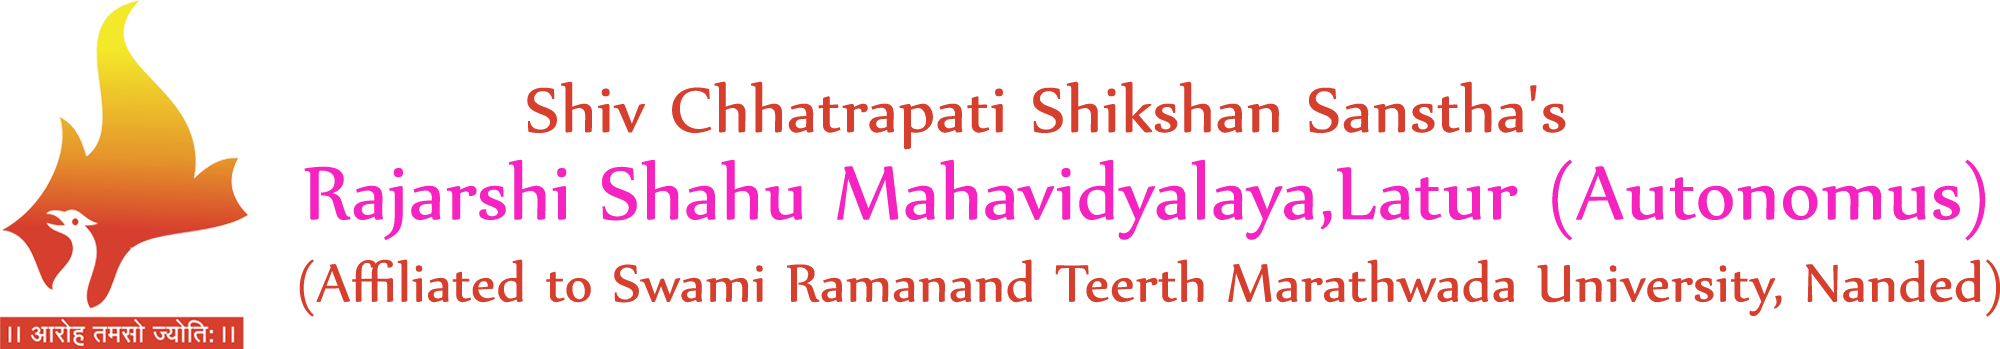 Rajarshi Shahu Mahavidyalaya,Latur(Autonomus)